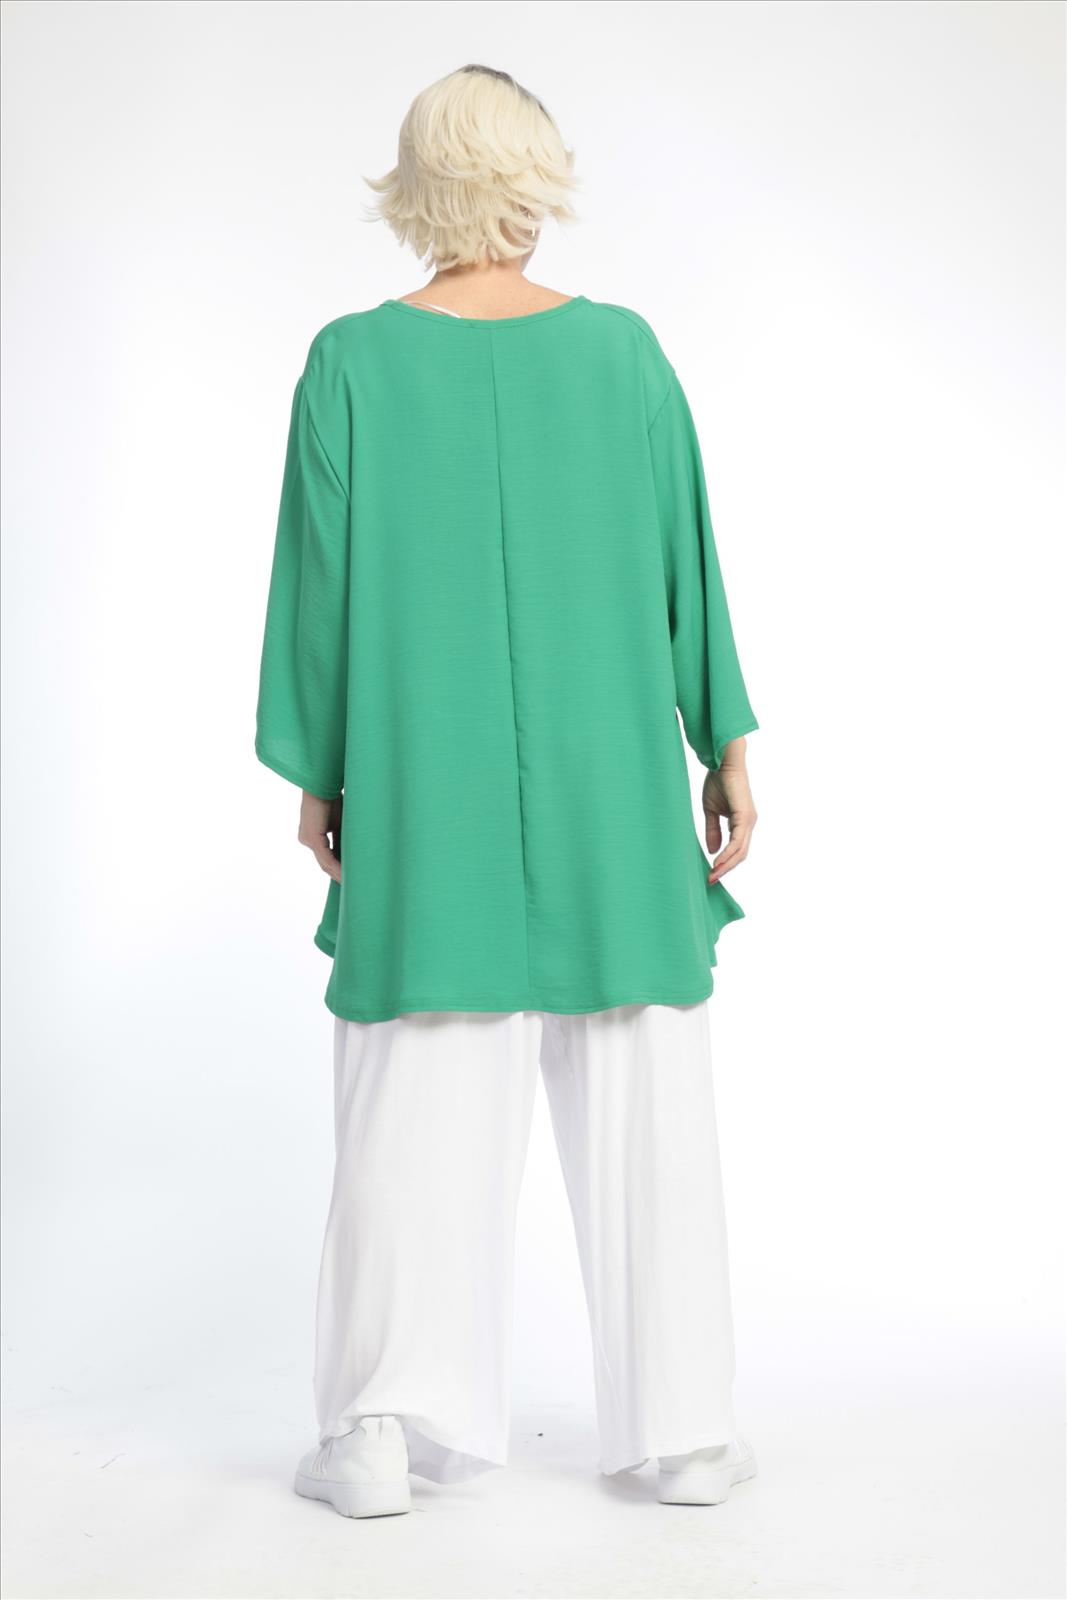 Sommer Shirt in Glocken Form aus er Twill Qualität, Grün Lagenlook Oversize Mode B2B Großhandel